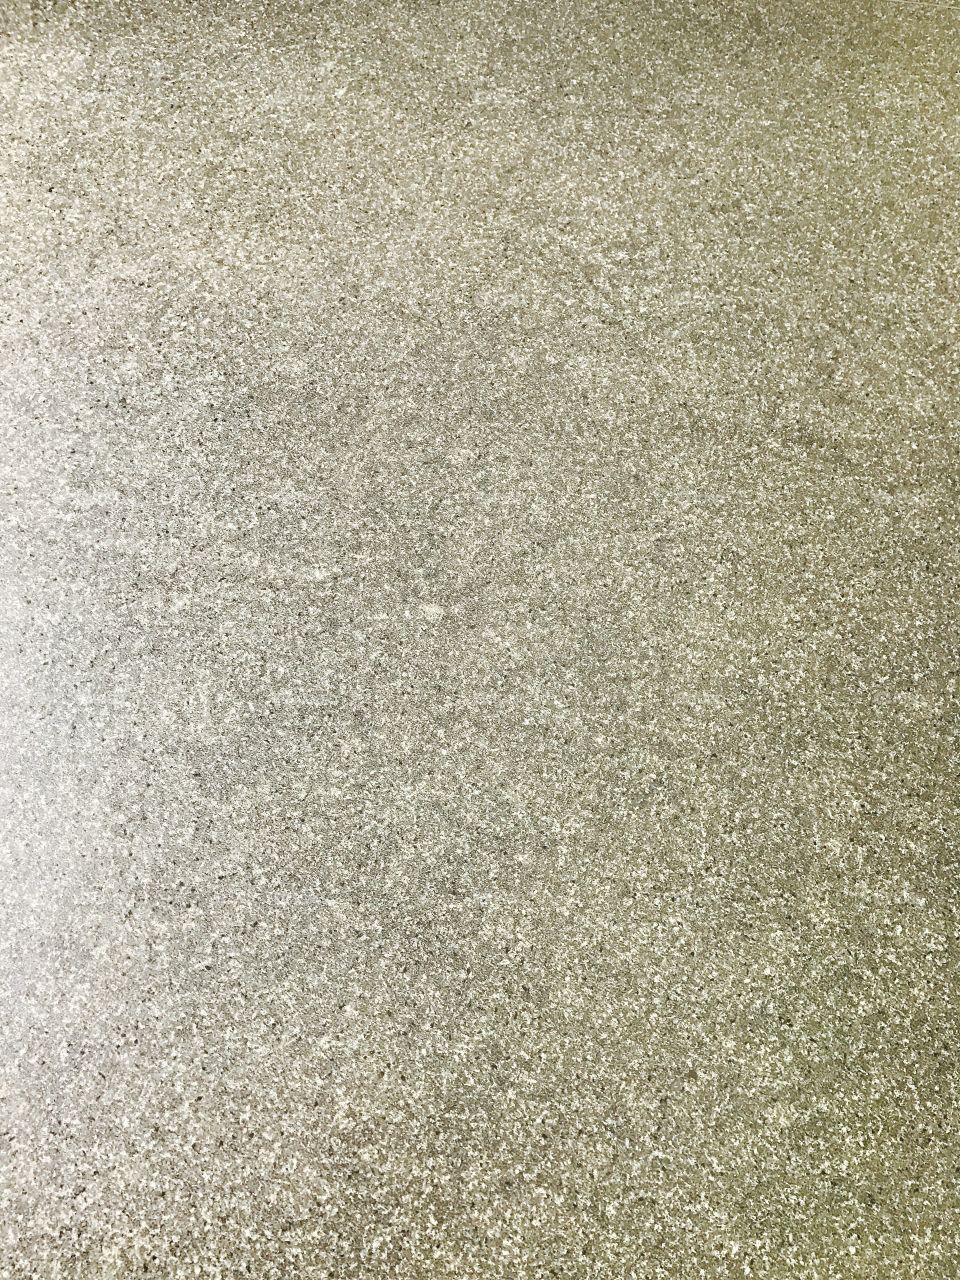 Vinyl-floor-background-grey